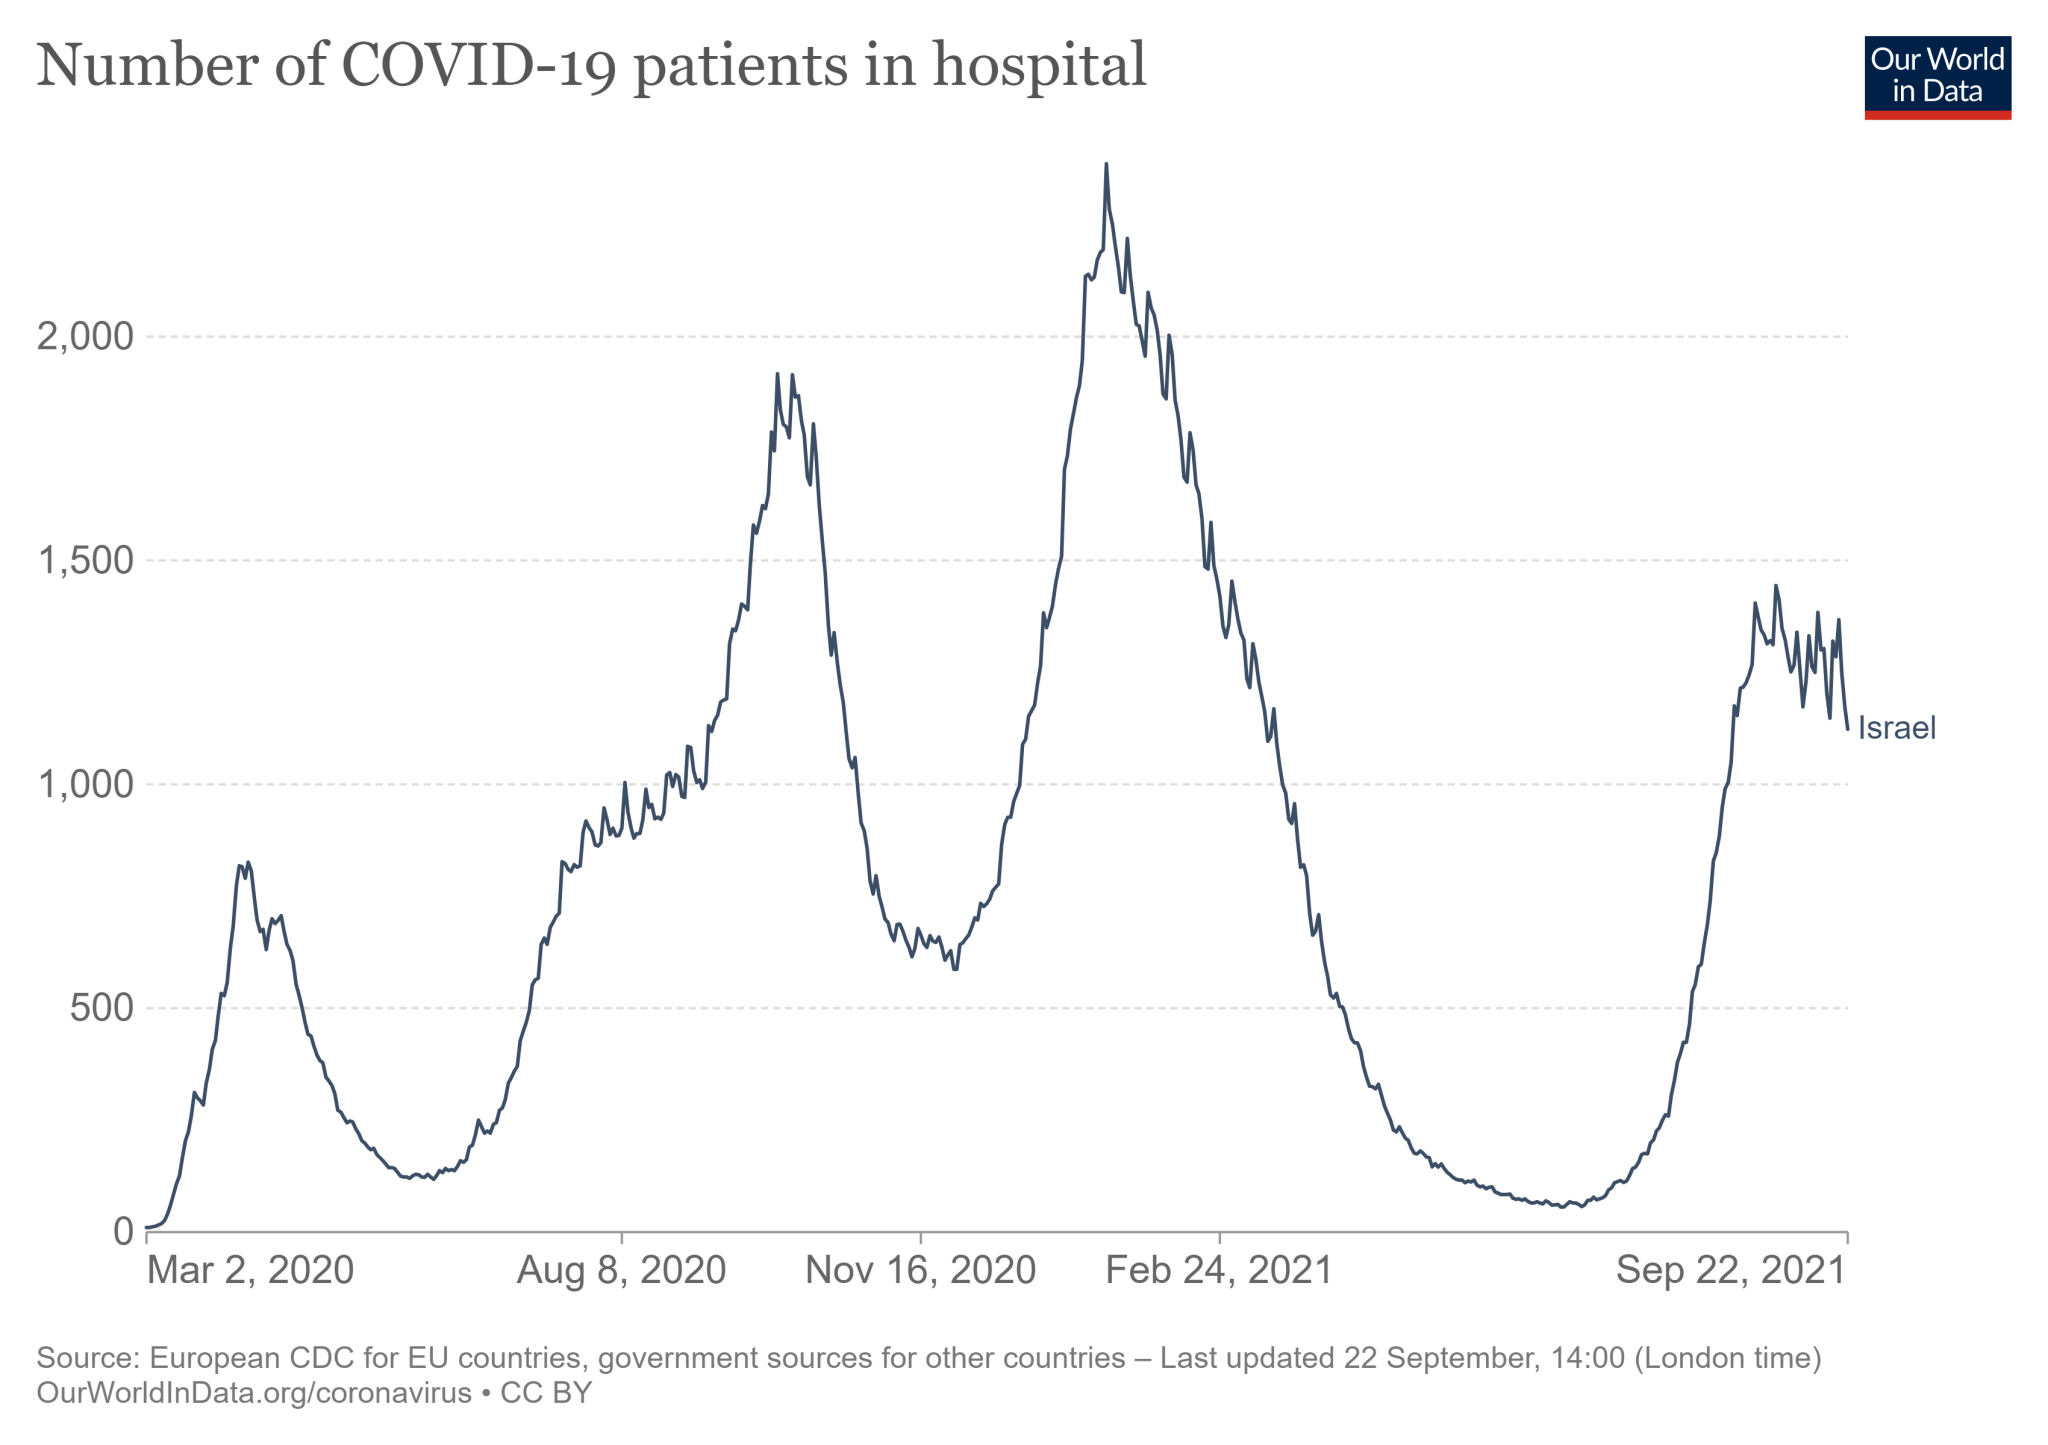 Liczba pacjentów z COVID-19 w Izraelu przebywających w szpitalach - od początku pandemii do 22 września 2021 roku